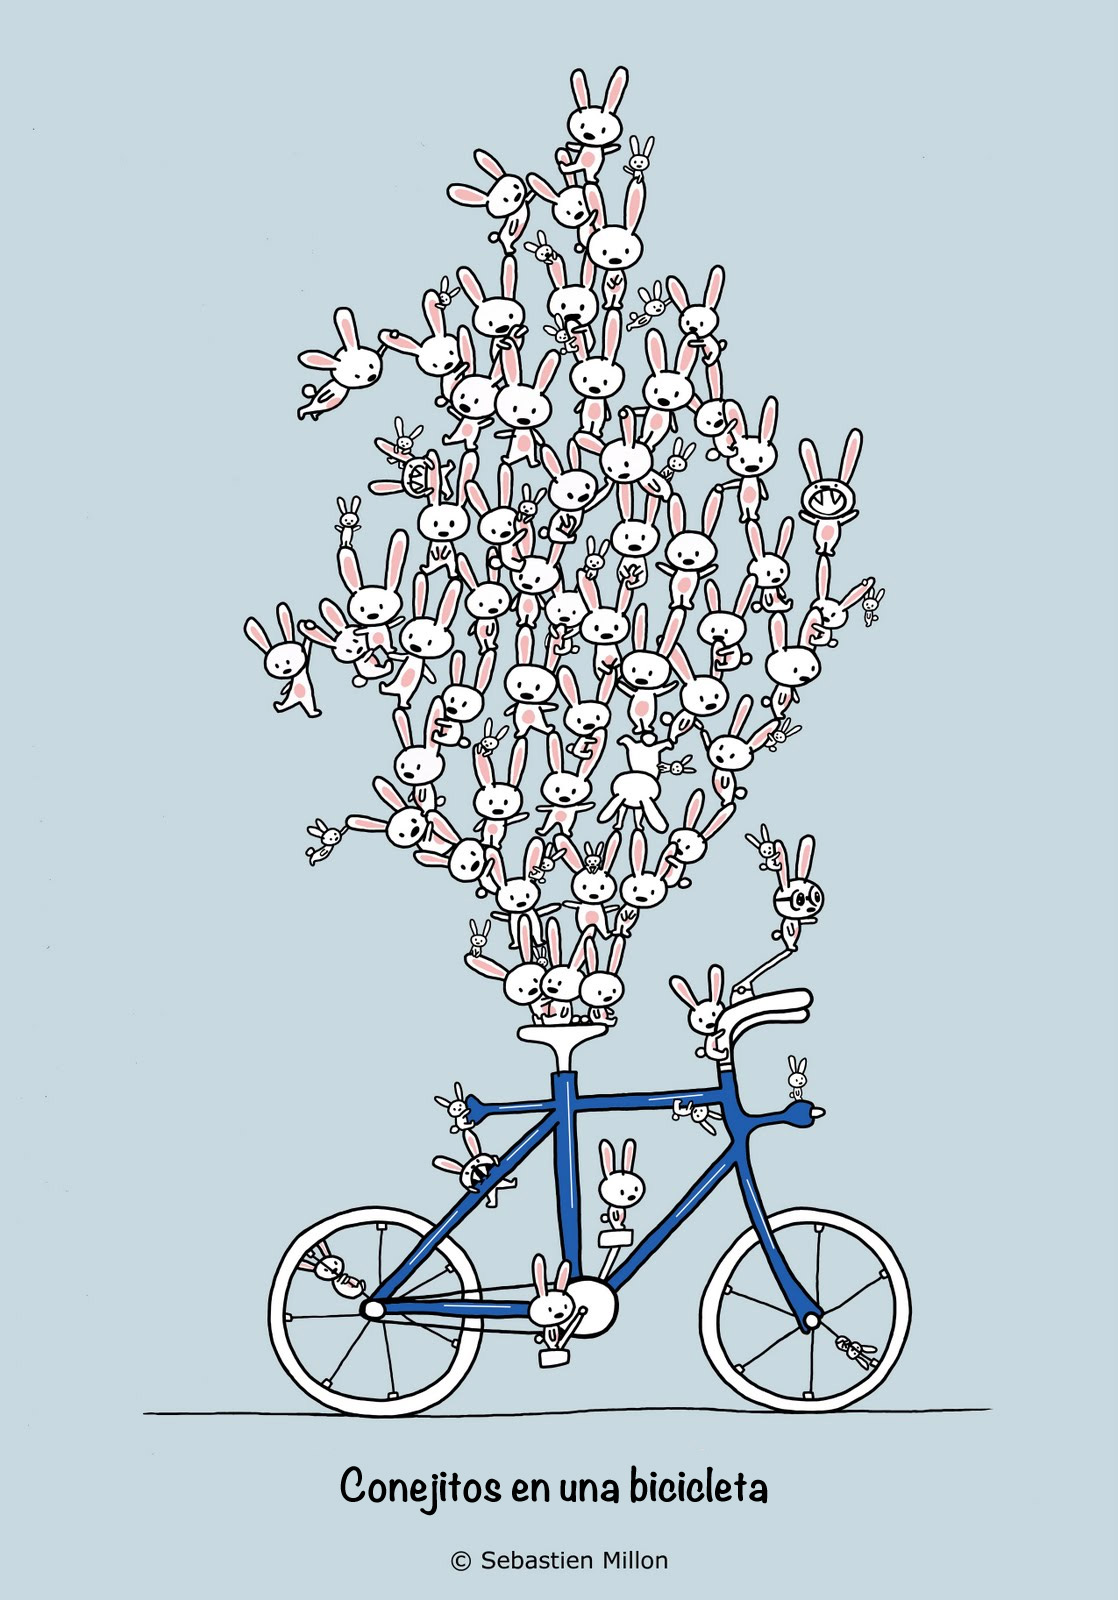 Conejitos en una bicicleta